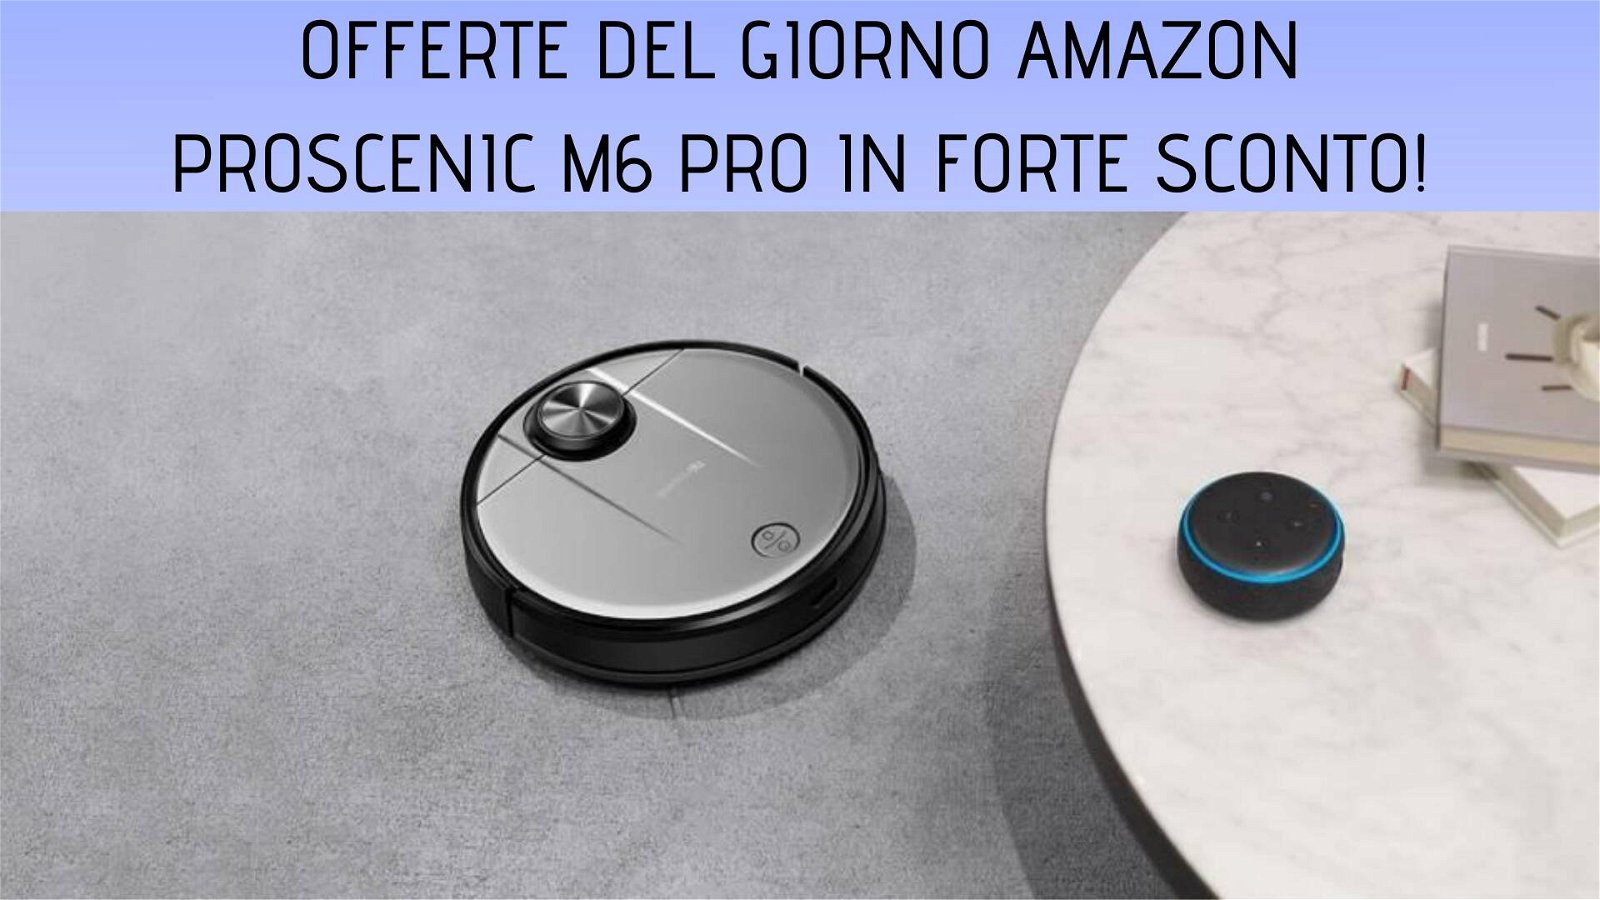 Immagine di Offerte del giorno Amazon: robot aspirapolvere Proscenic M6 Pro al prezzo più basso di sempre!